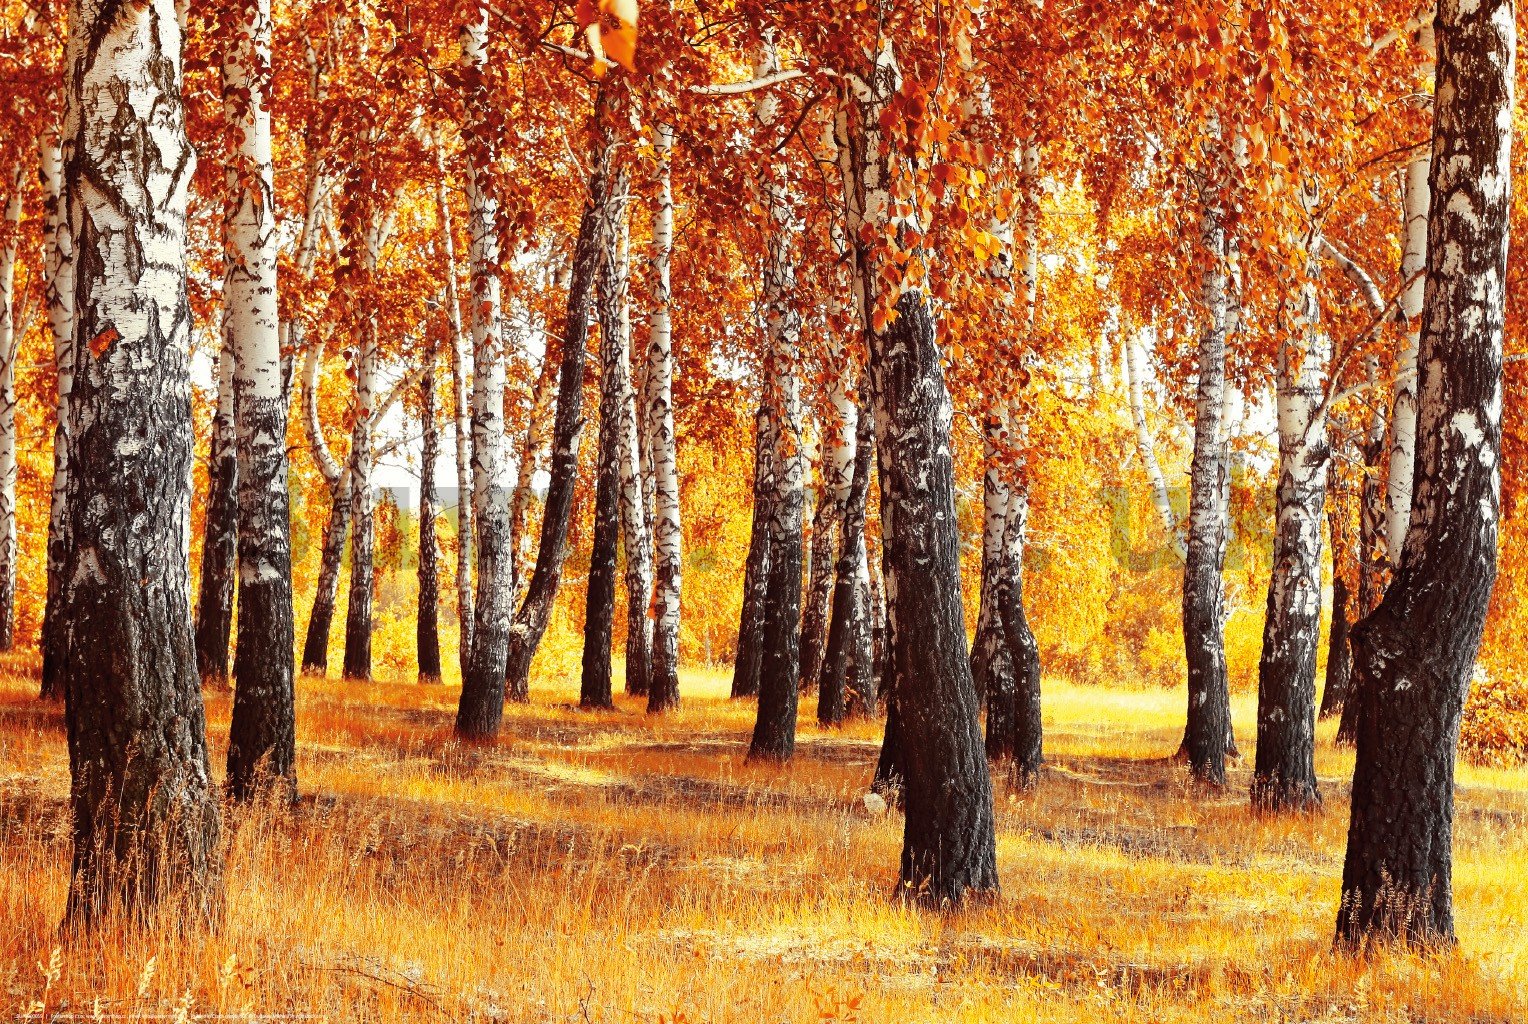 Poster: Autumn birches